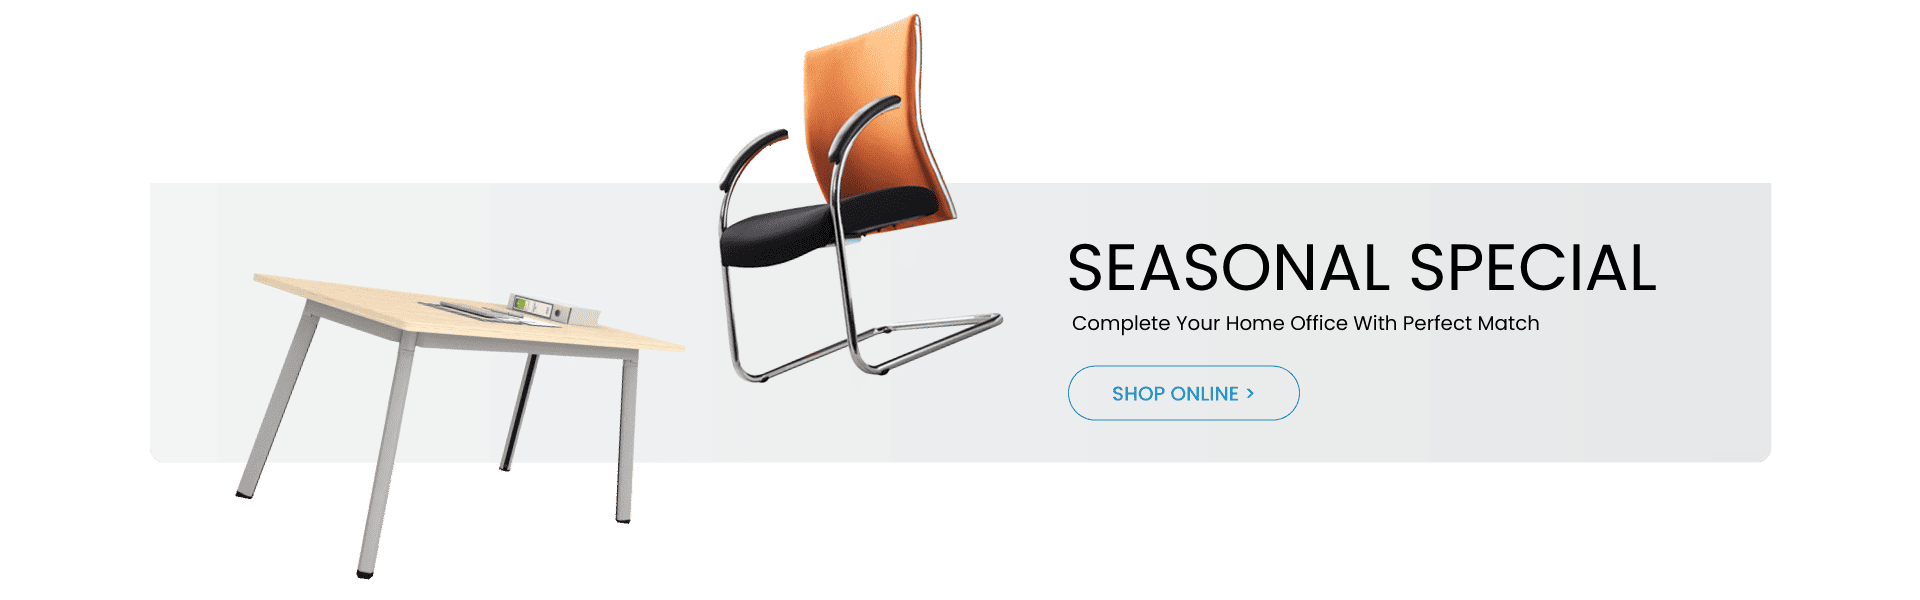 Artmatrix online shop seasonal special